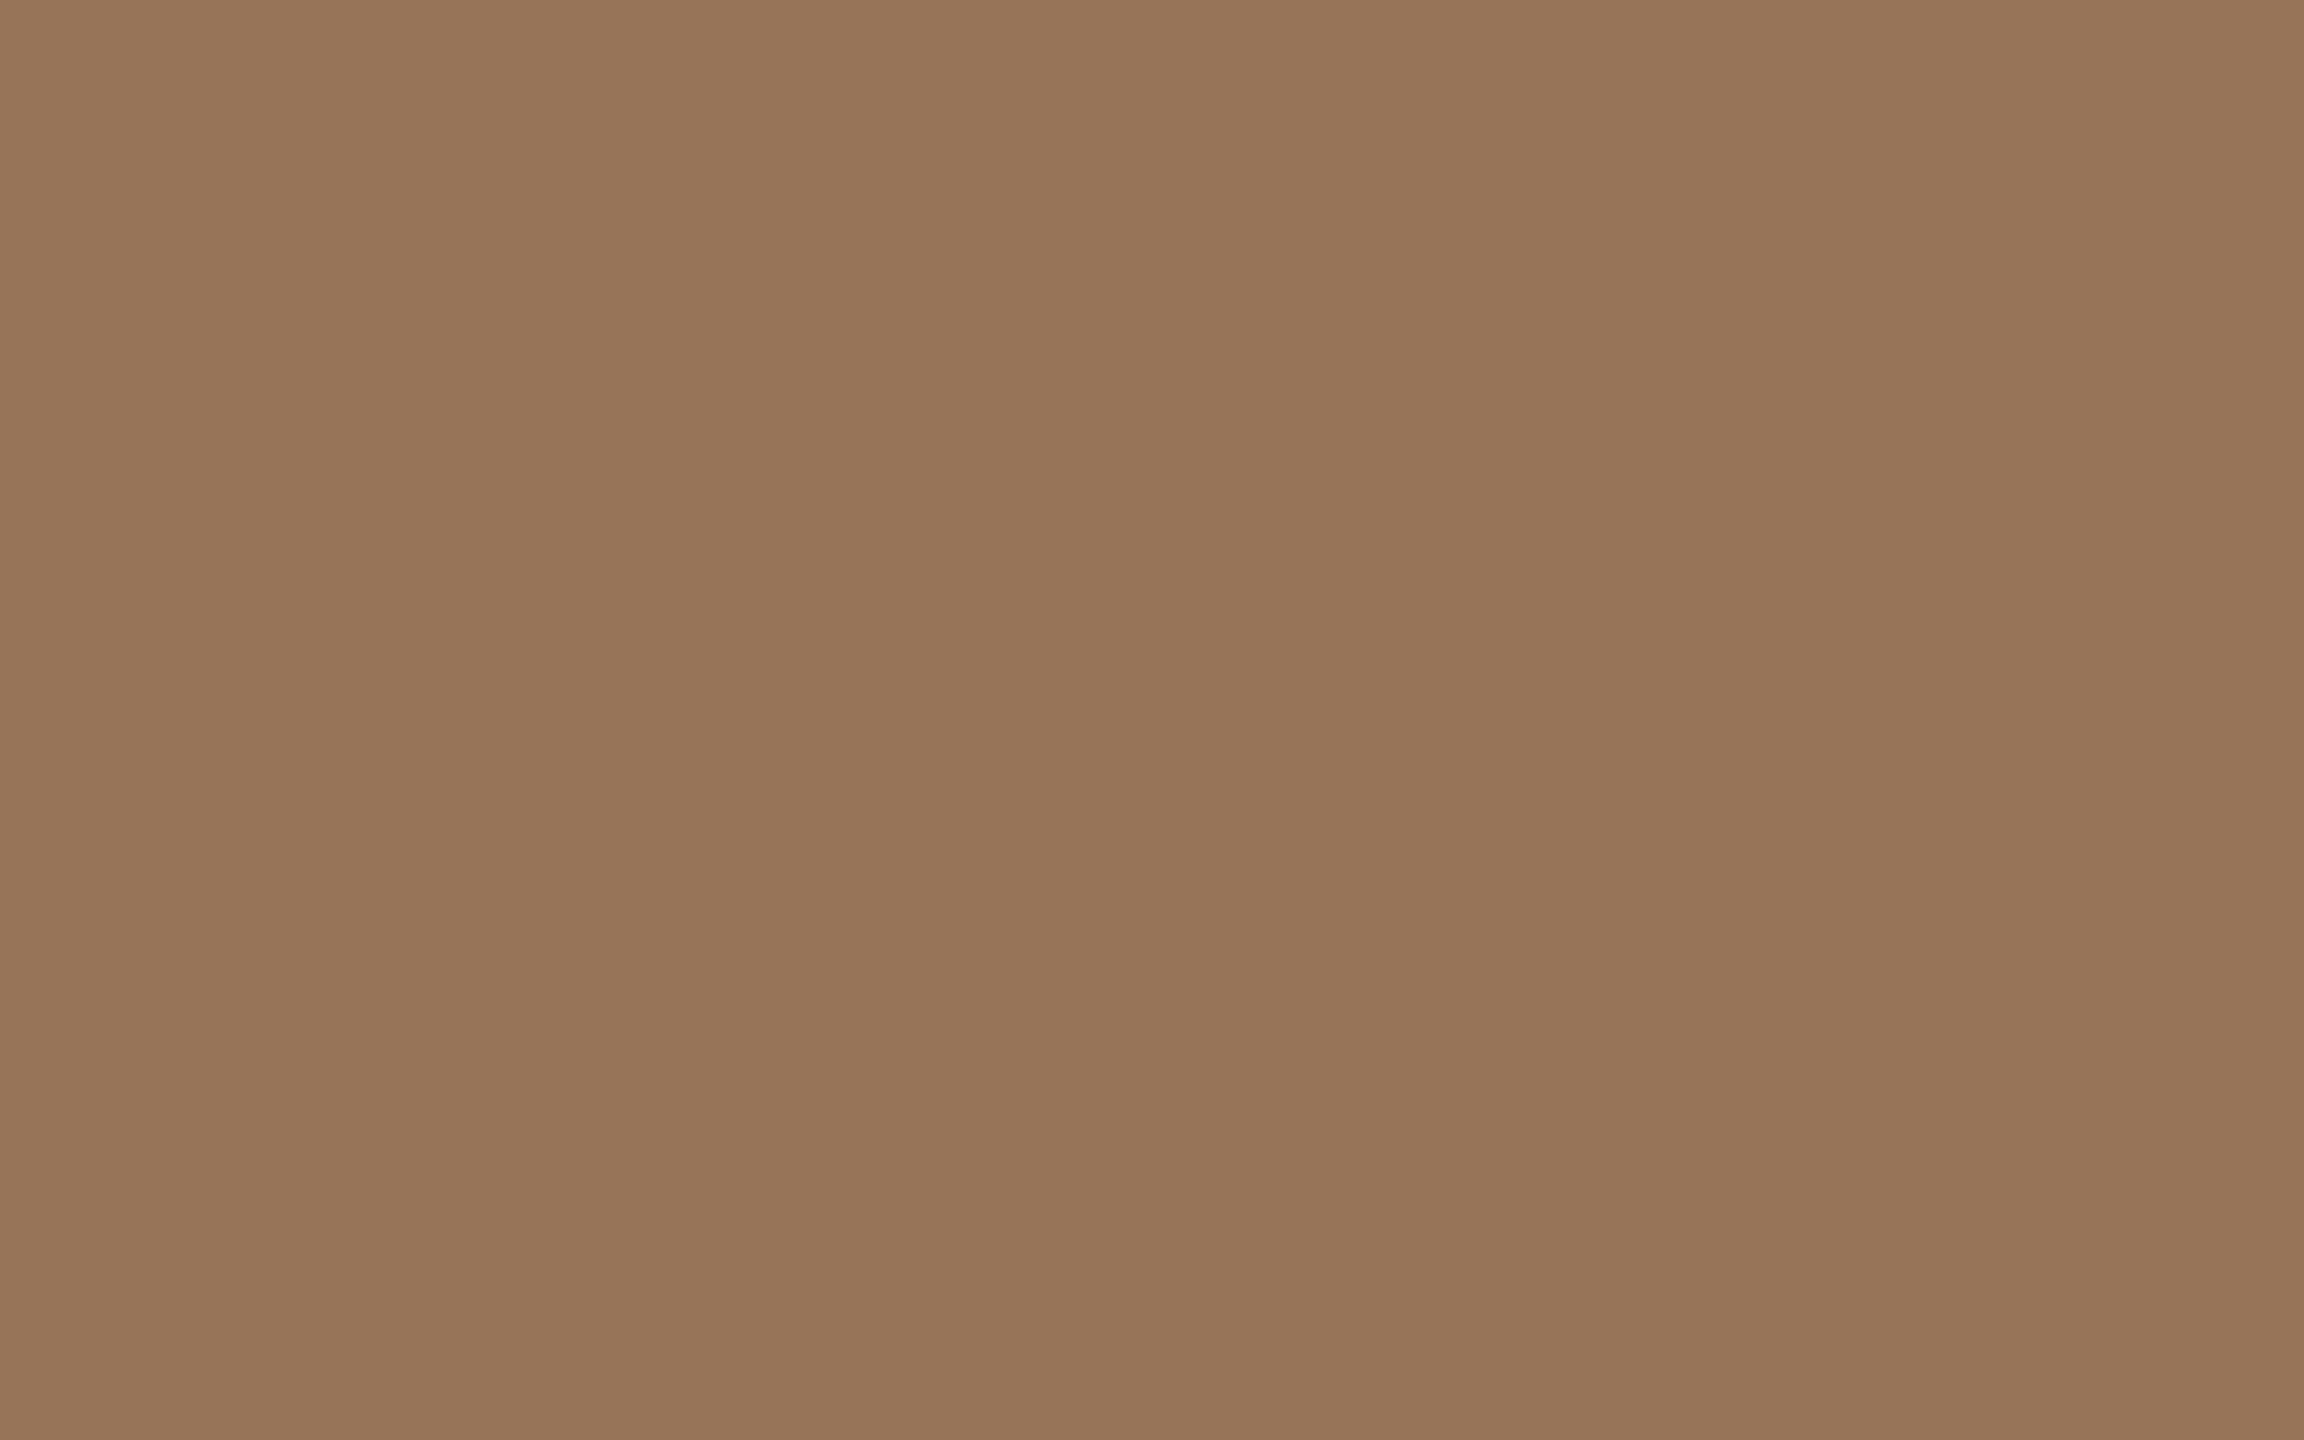 2304x1440 Liver Chestnut Solid Color Background